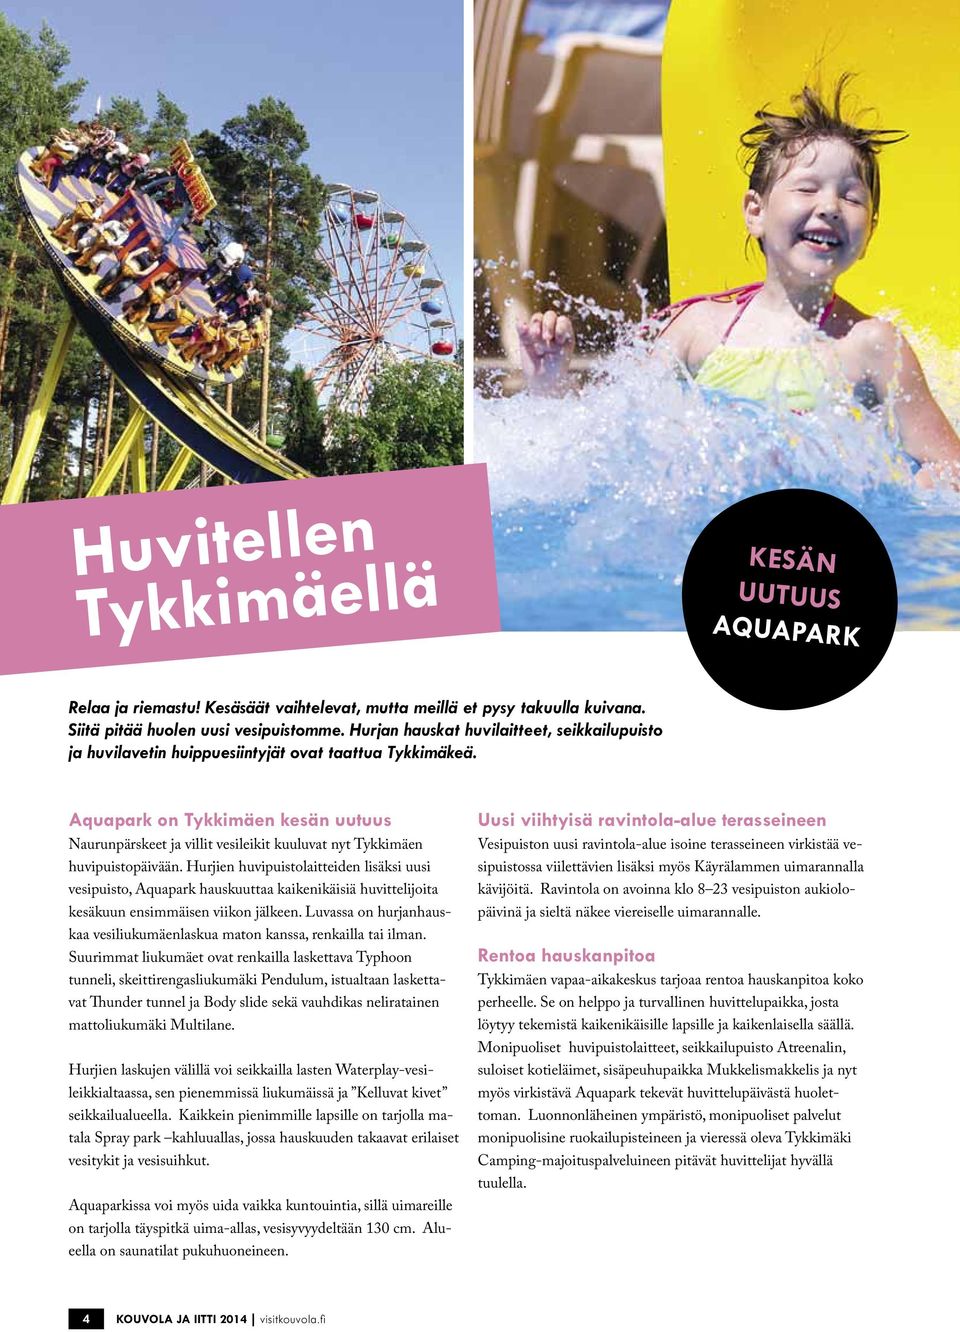 Aquapark on Tykkimäen kesän uutuus Naurunpärskeet ja villit vesileikit kuuluvat nyt Tykkimäen huvipuistopäivään.